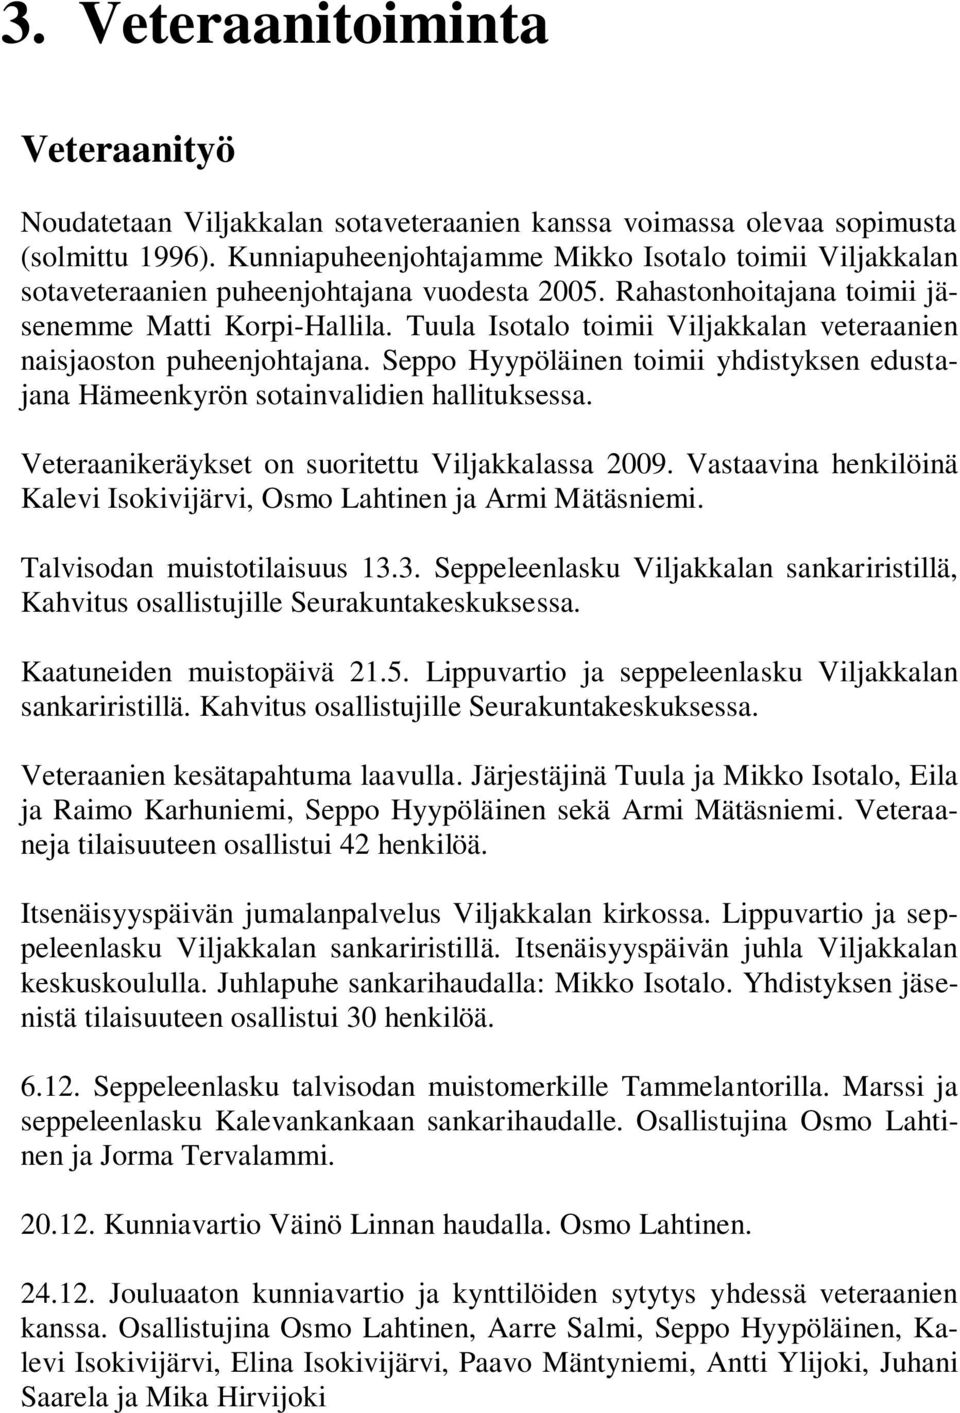 Tuula Isotalo toimii Viljakkalan veteraanien naisjaoston puheenjohtajana. Seppo Hyypöläinen toimii yhdistyksen edustajana Hämeenkyrön sotainvalidien hallituksessa.